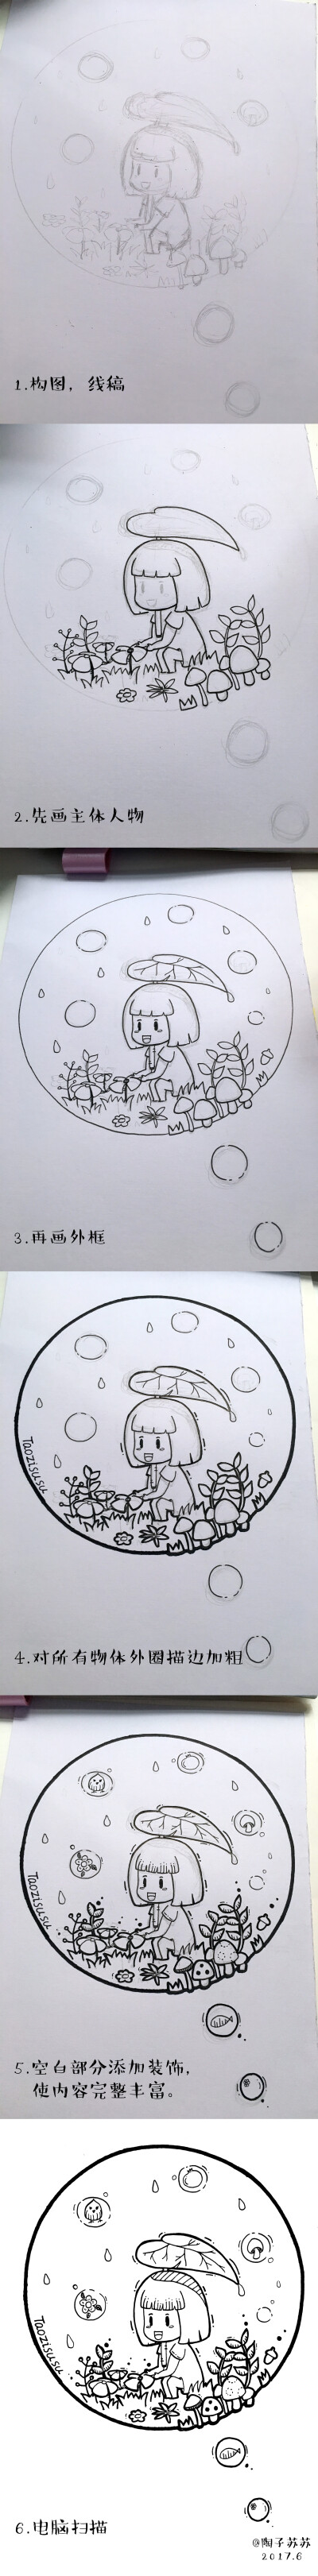 《采蘑菇的小姑娘》黑白画手绘教程—原创来自陶子苏苏绘